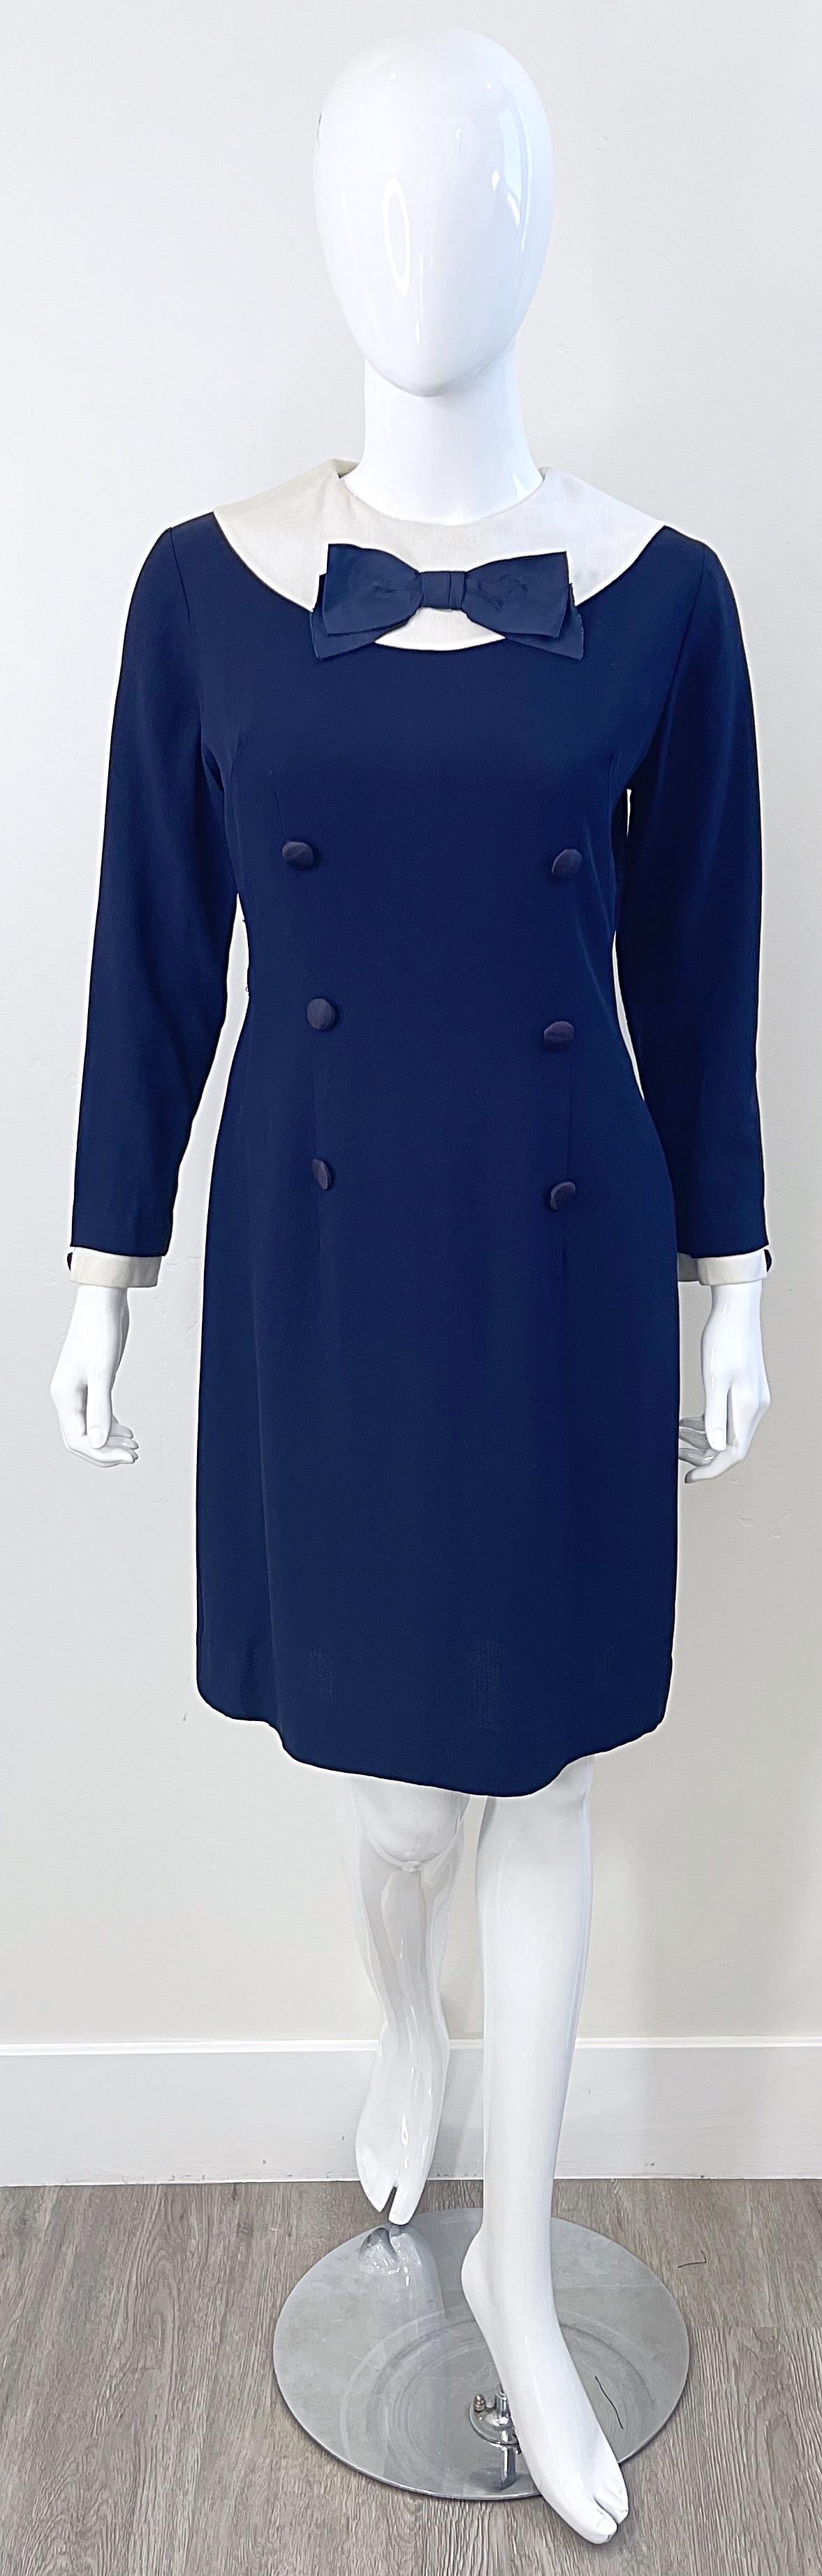 Schickes marineblau-weißes langärmeliges Kleid aus den 1960er Jahren ! Aus einem weichen Mischgewebe aus Seide und Viskose. Seidenschleife in der oberen Mitte der Büste. Vollständig gefüttert. Durchgehender Metallreißverschluss auf der Rückseite mit